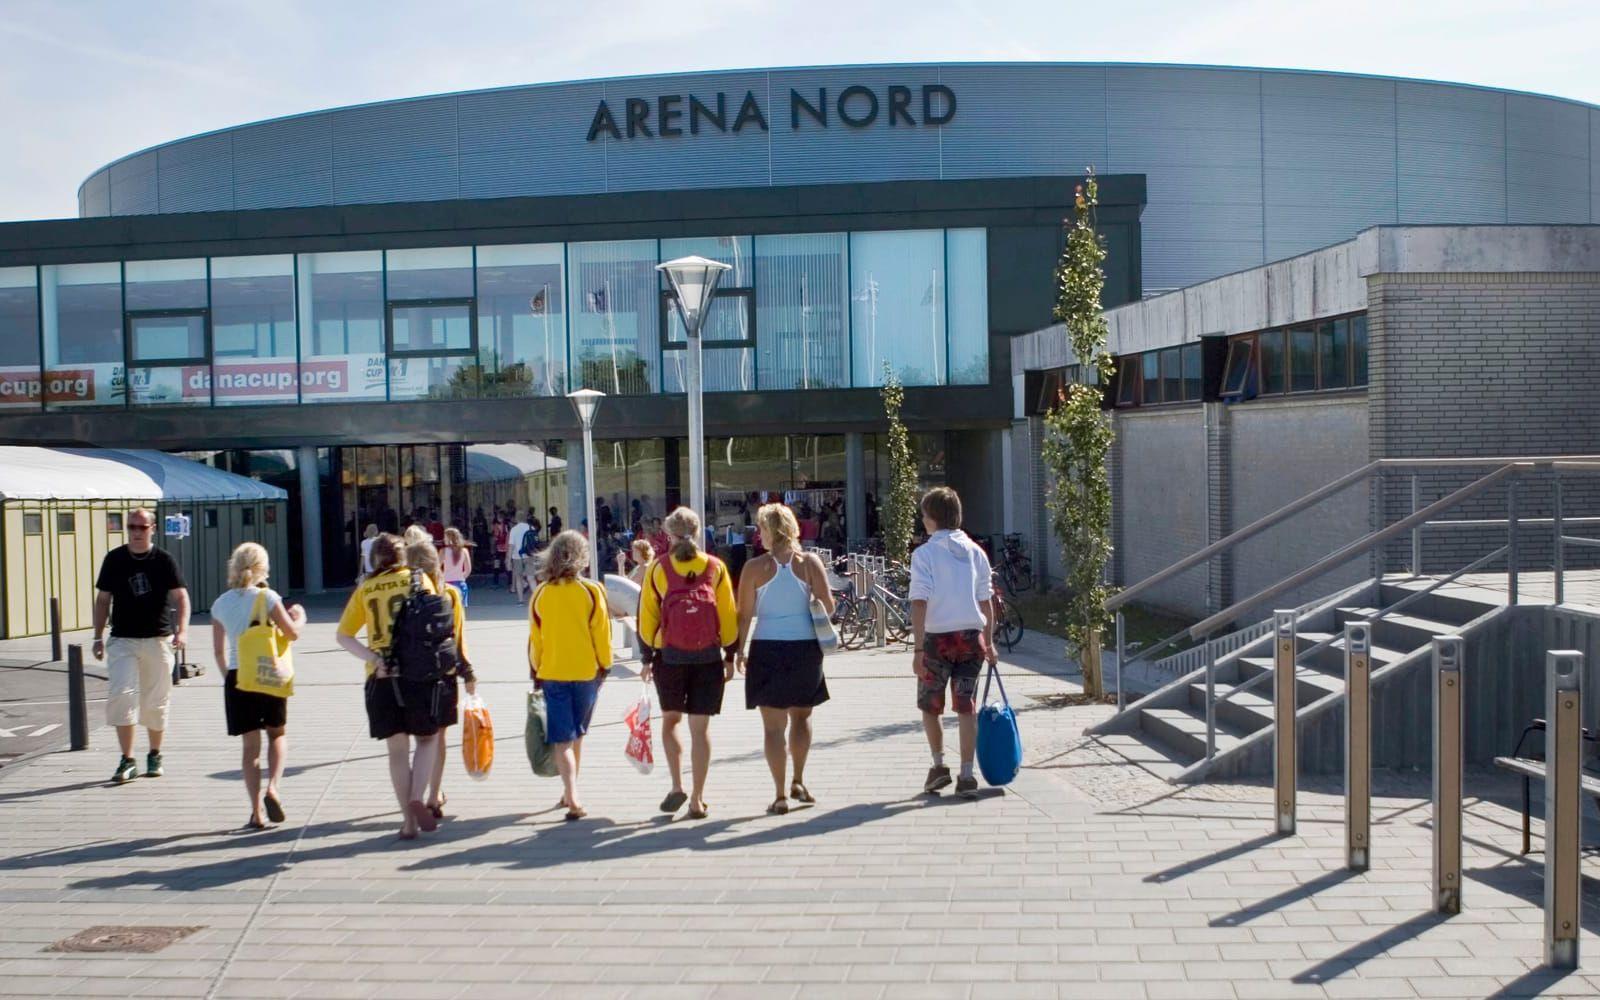 Arena Nord är en plats för konserter, utställningar och event. Foto: Turisthus Nord